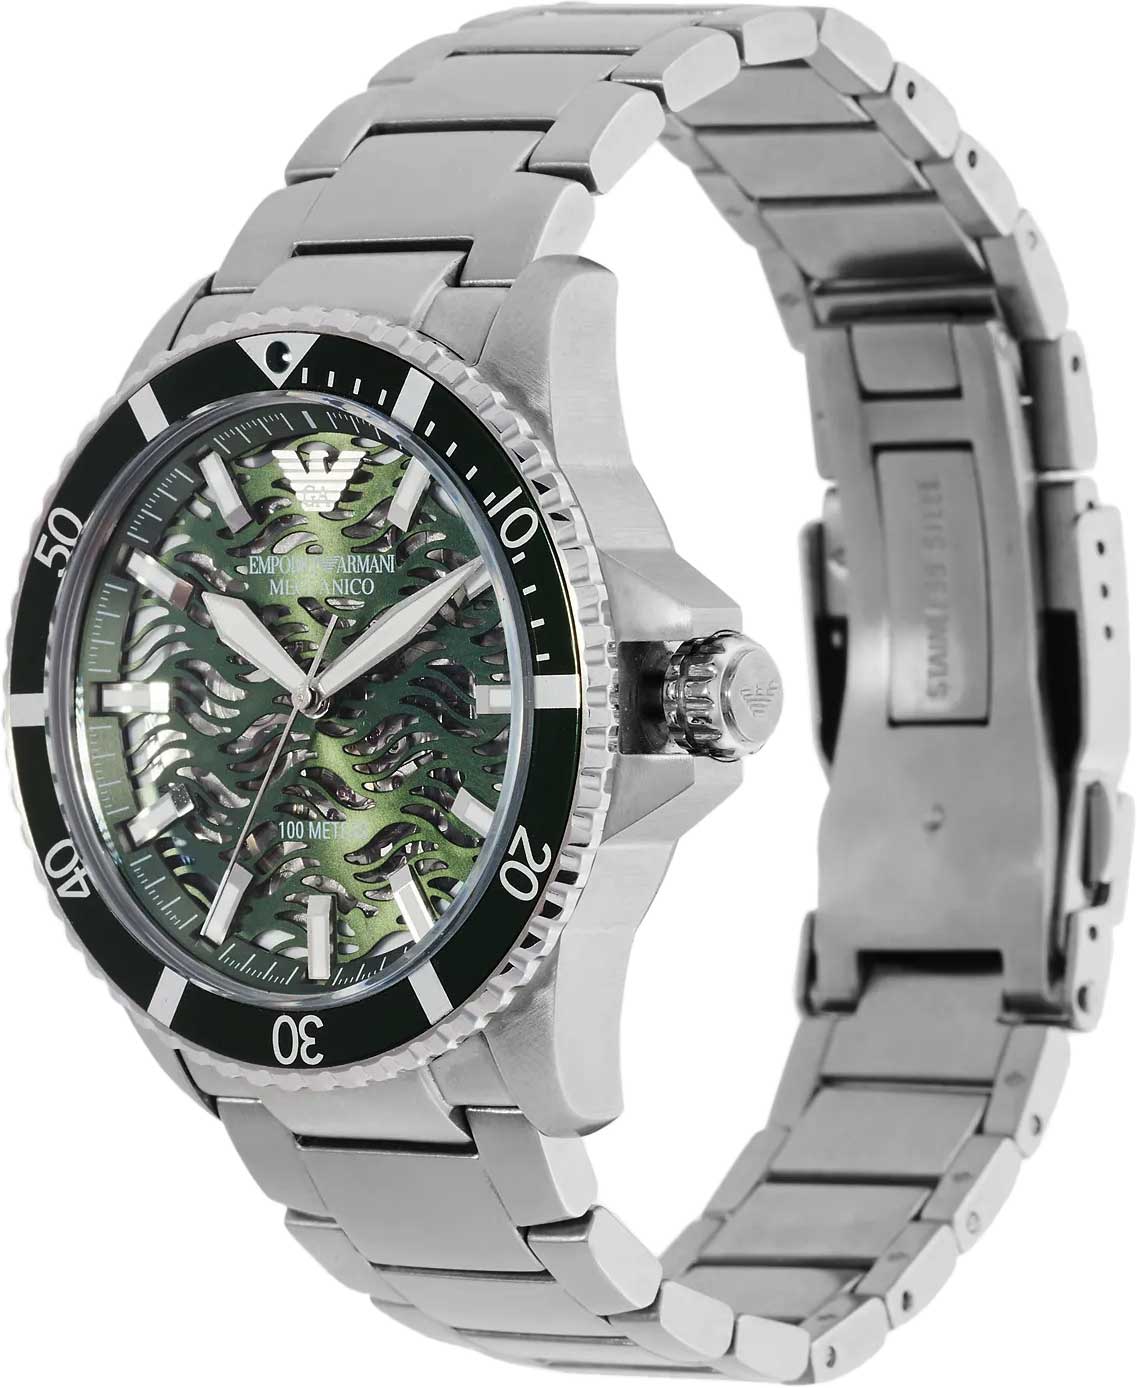 Наручные часы Emporio Armani AllTime.ru по характеристики, AR60061 инструкция, описание в цене, купить — фото, интернет-магазине лучшей